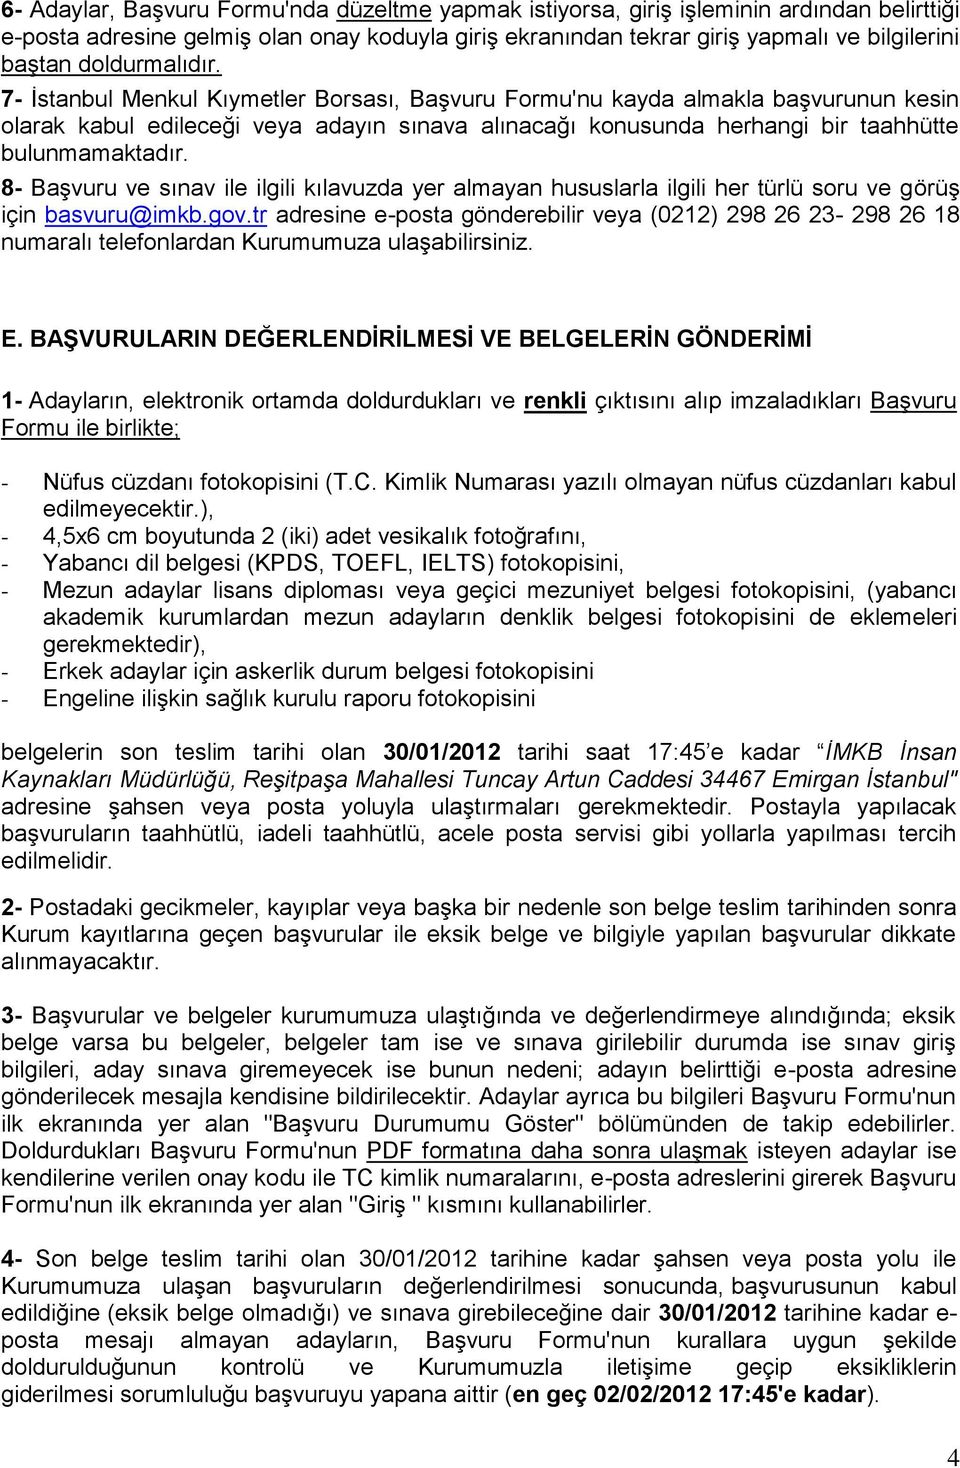 7- İstanbul Menkul Kıymetler Borsası, Başvuru Formu'nu kayda almakla başvurunun kesin olarak kabul edileceği veya adayın sınava alınacağı konusunda herhangi bir taahhütte bulunmamaktadır.